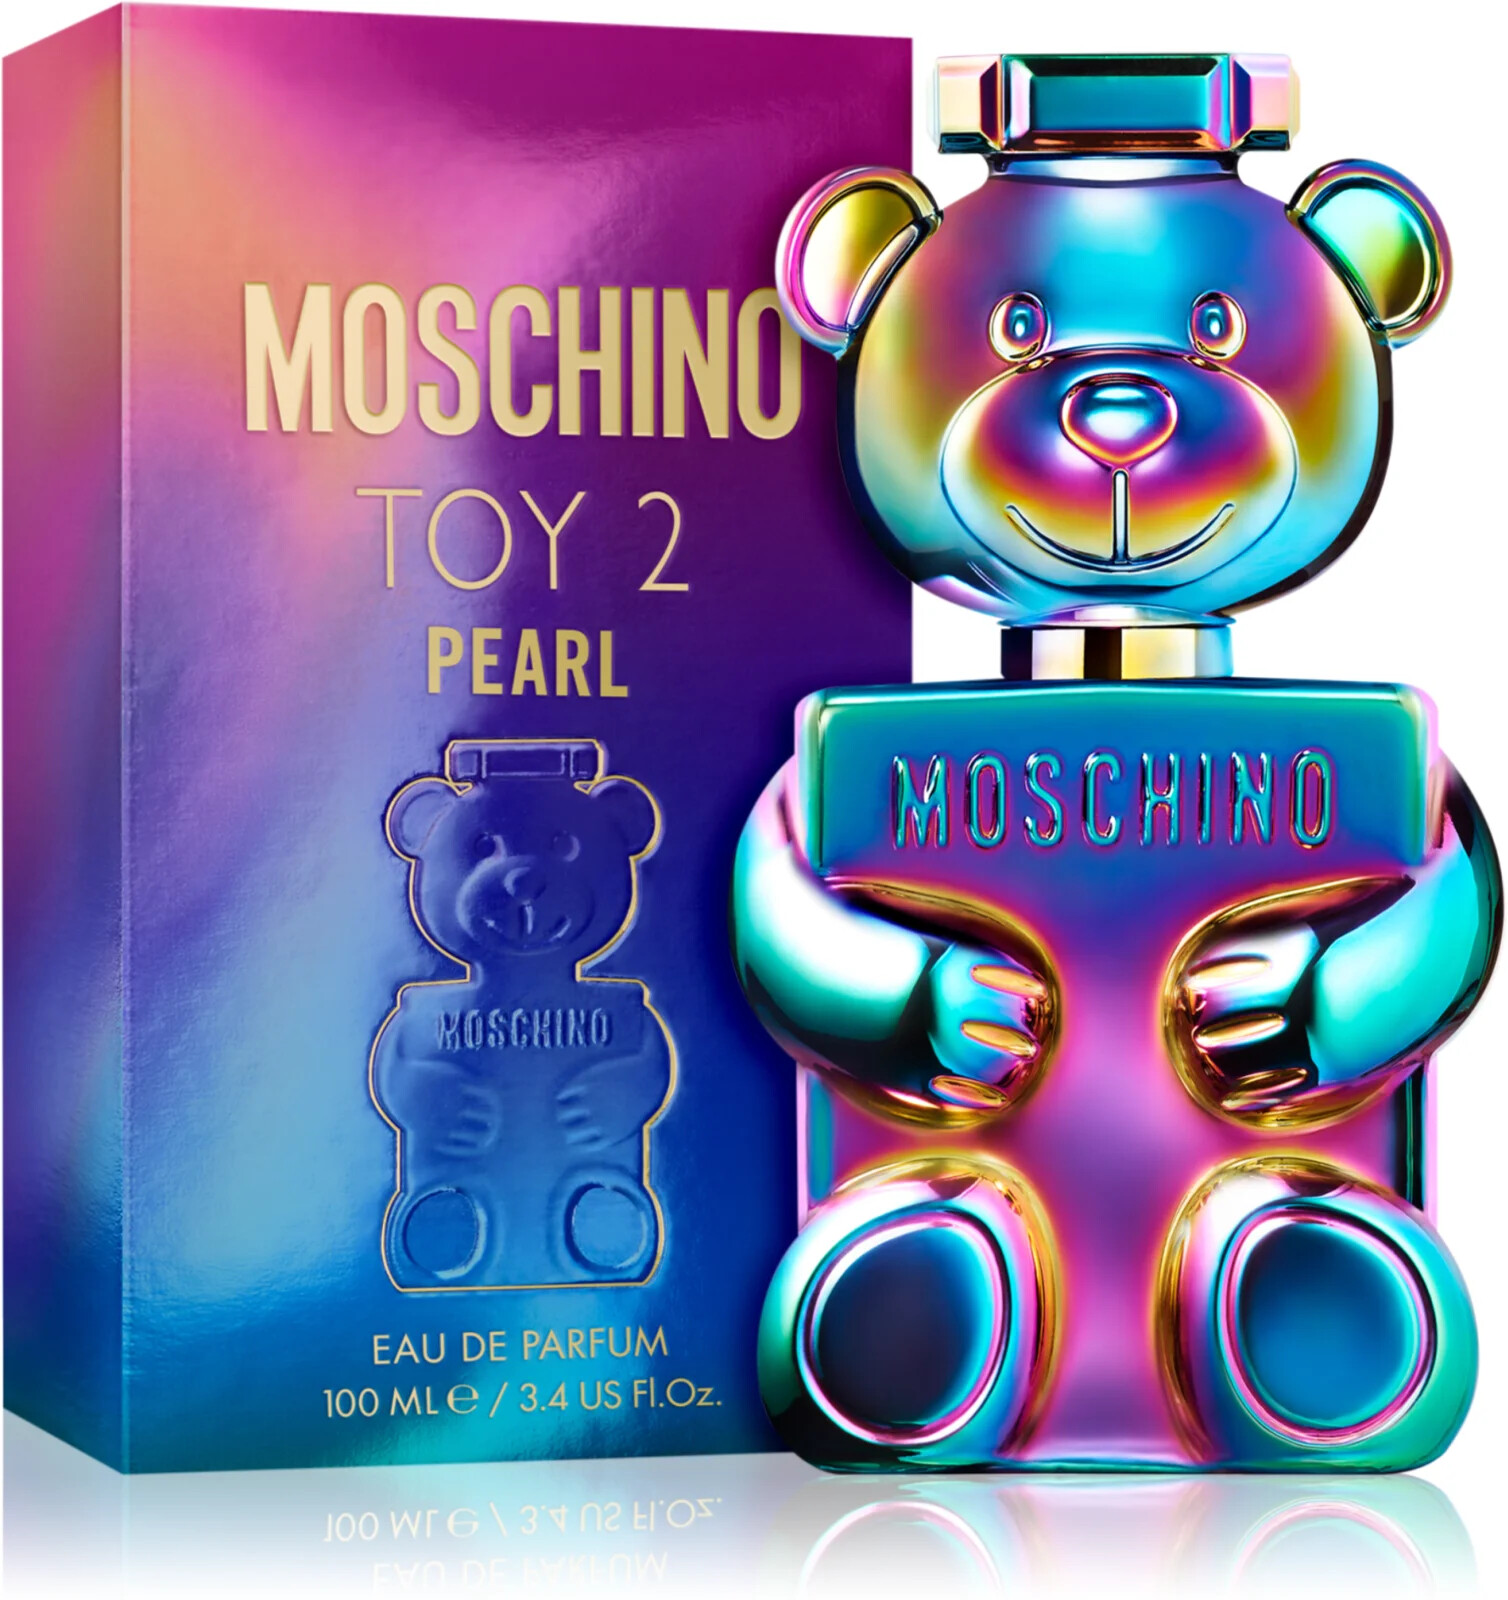 Moschino Toy 2 Pearl parfémovaná voda pro ženy 100 ml